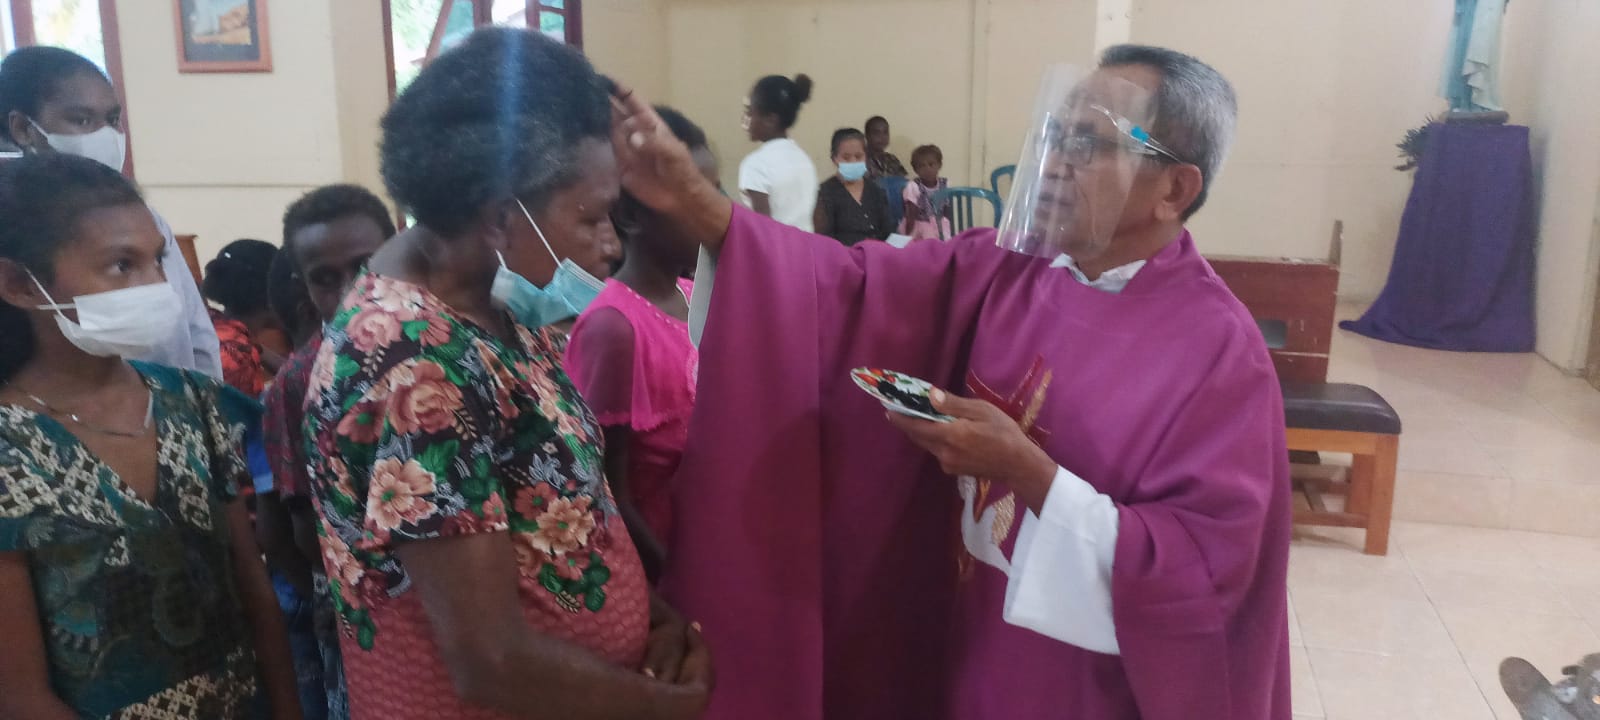 Pastor Pius Oematan, Pr sedang menandai abu di dahi salah seorang umat – Surya Papua/Frans Kobun